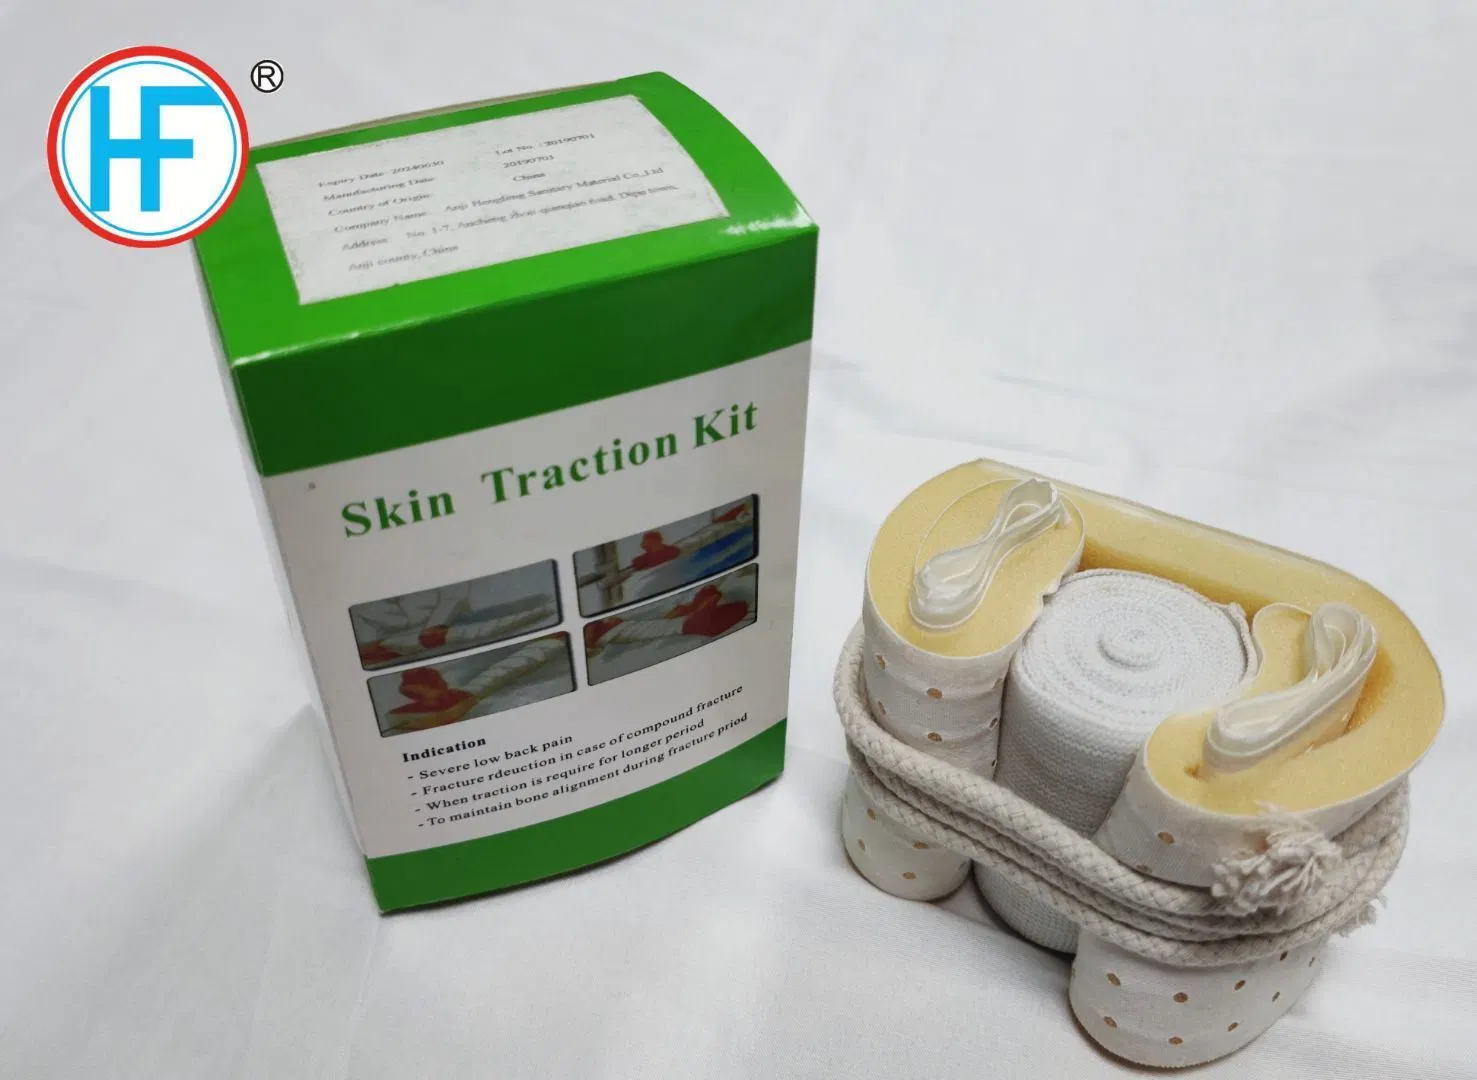 Ortopedia médicos adhesivo para adultos y niños Kit de tracción de la piel